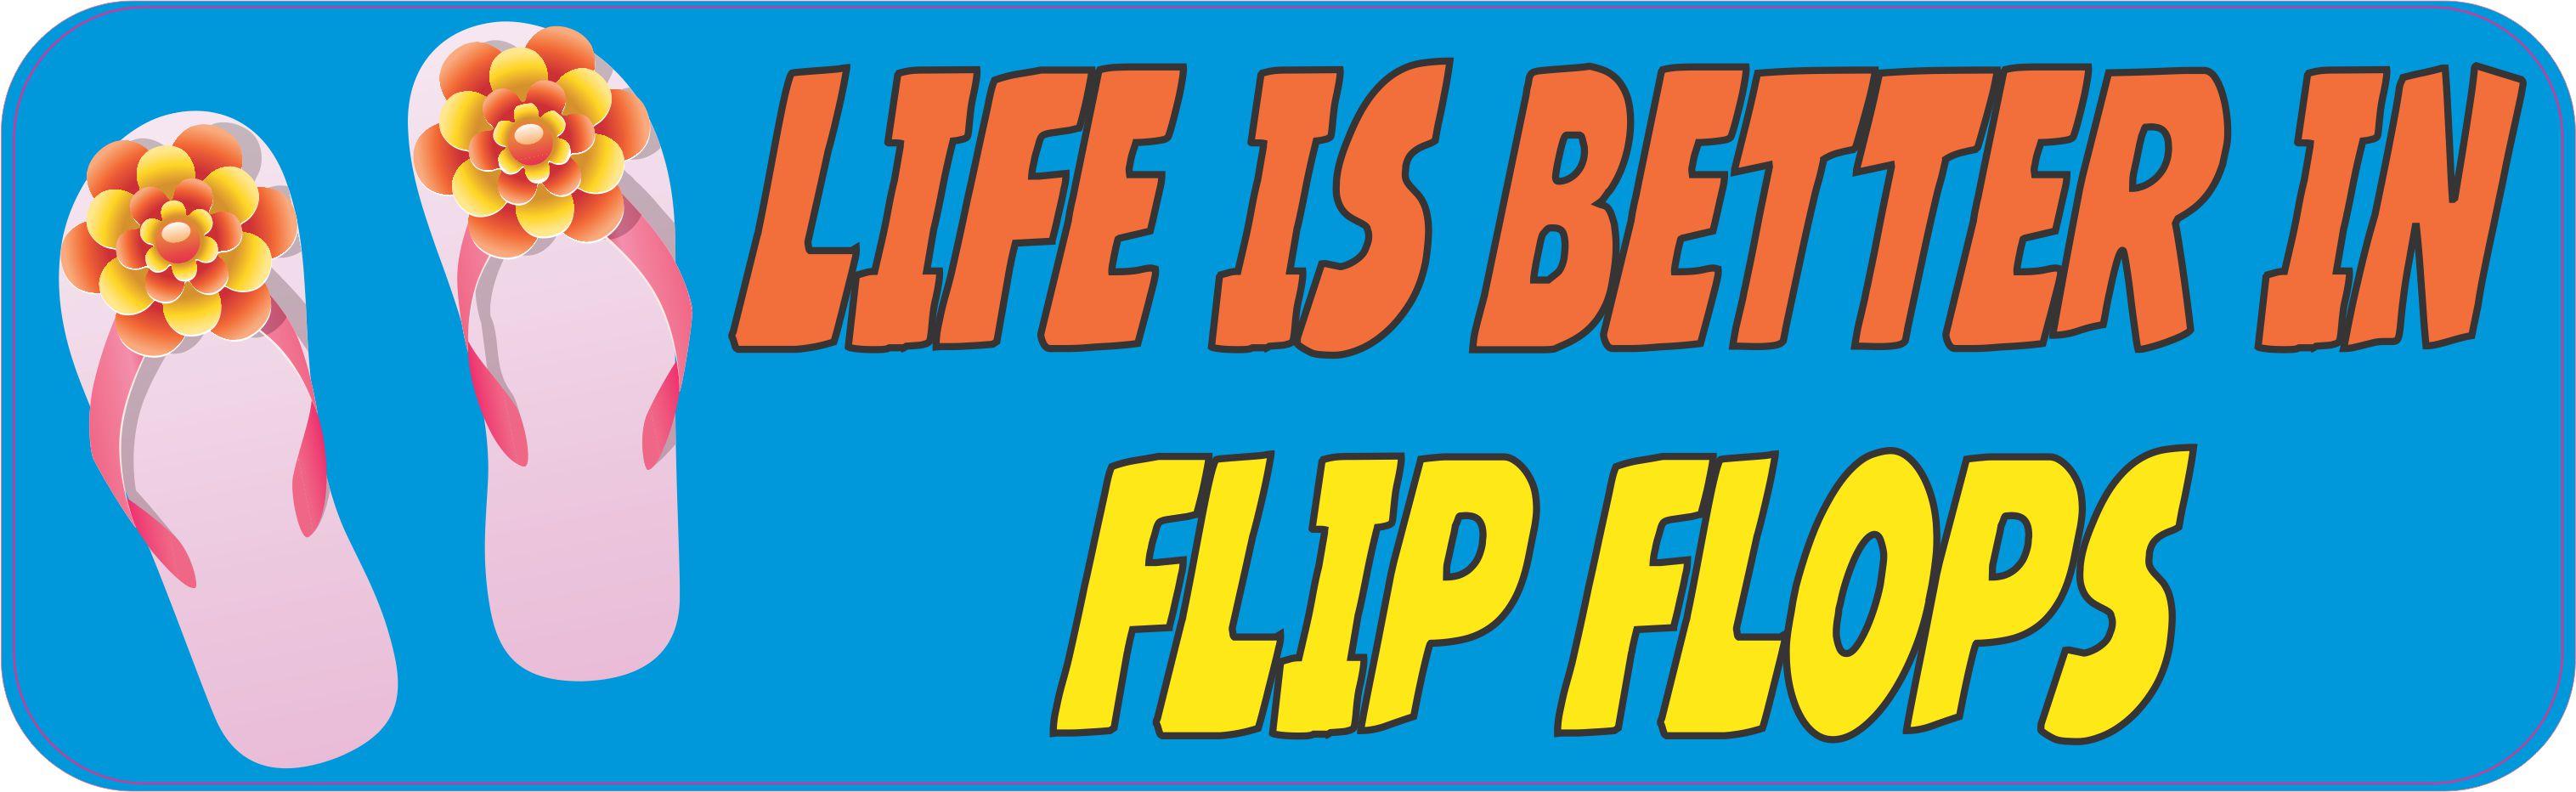 10in x 3in Life Is Better In Flip Flops Vinyl Bumper Sticker Car Window ...